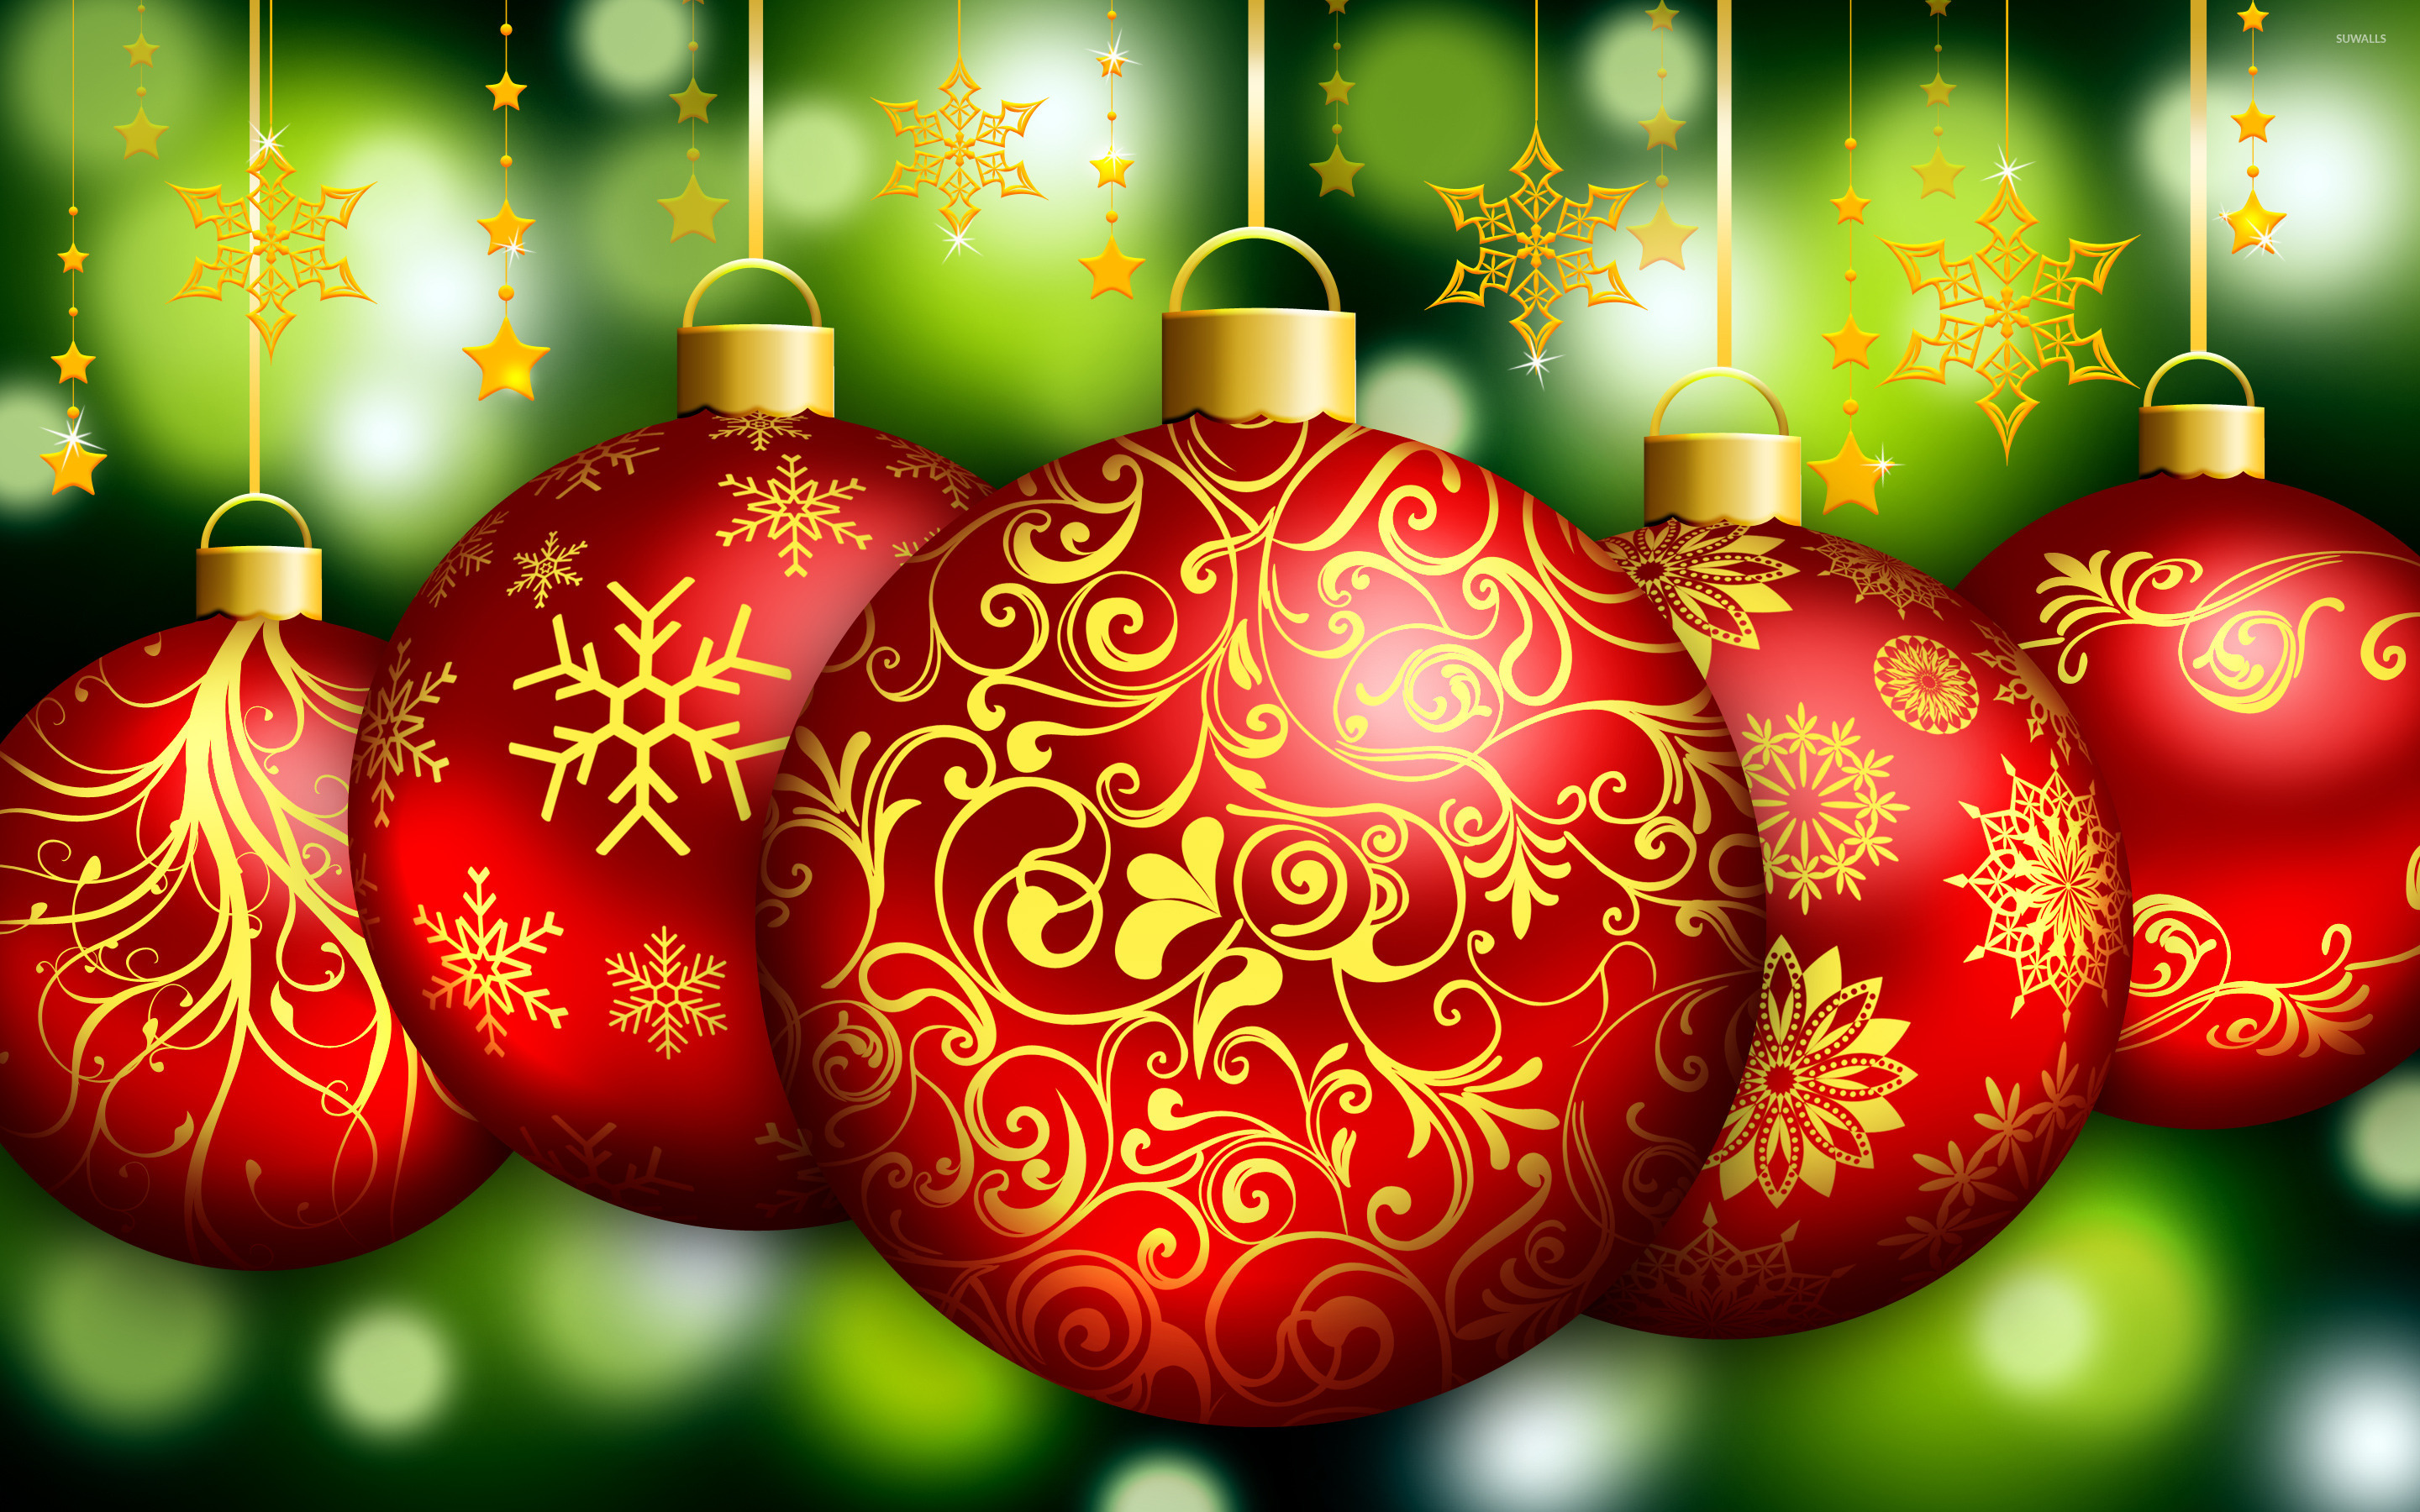 クリスマスの飾りの壁紙,クリスマスオーナメント,クリスマスの飾り,オーナメント,休日の飾り,クリスマス